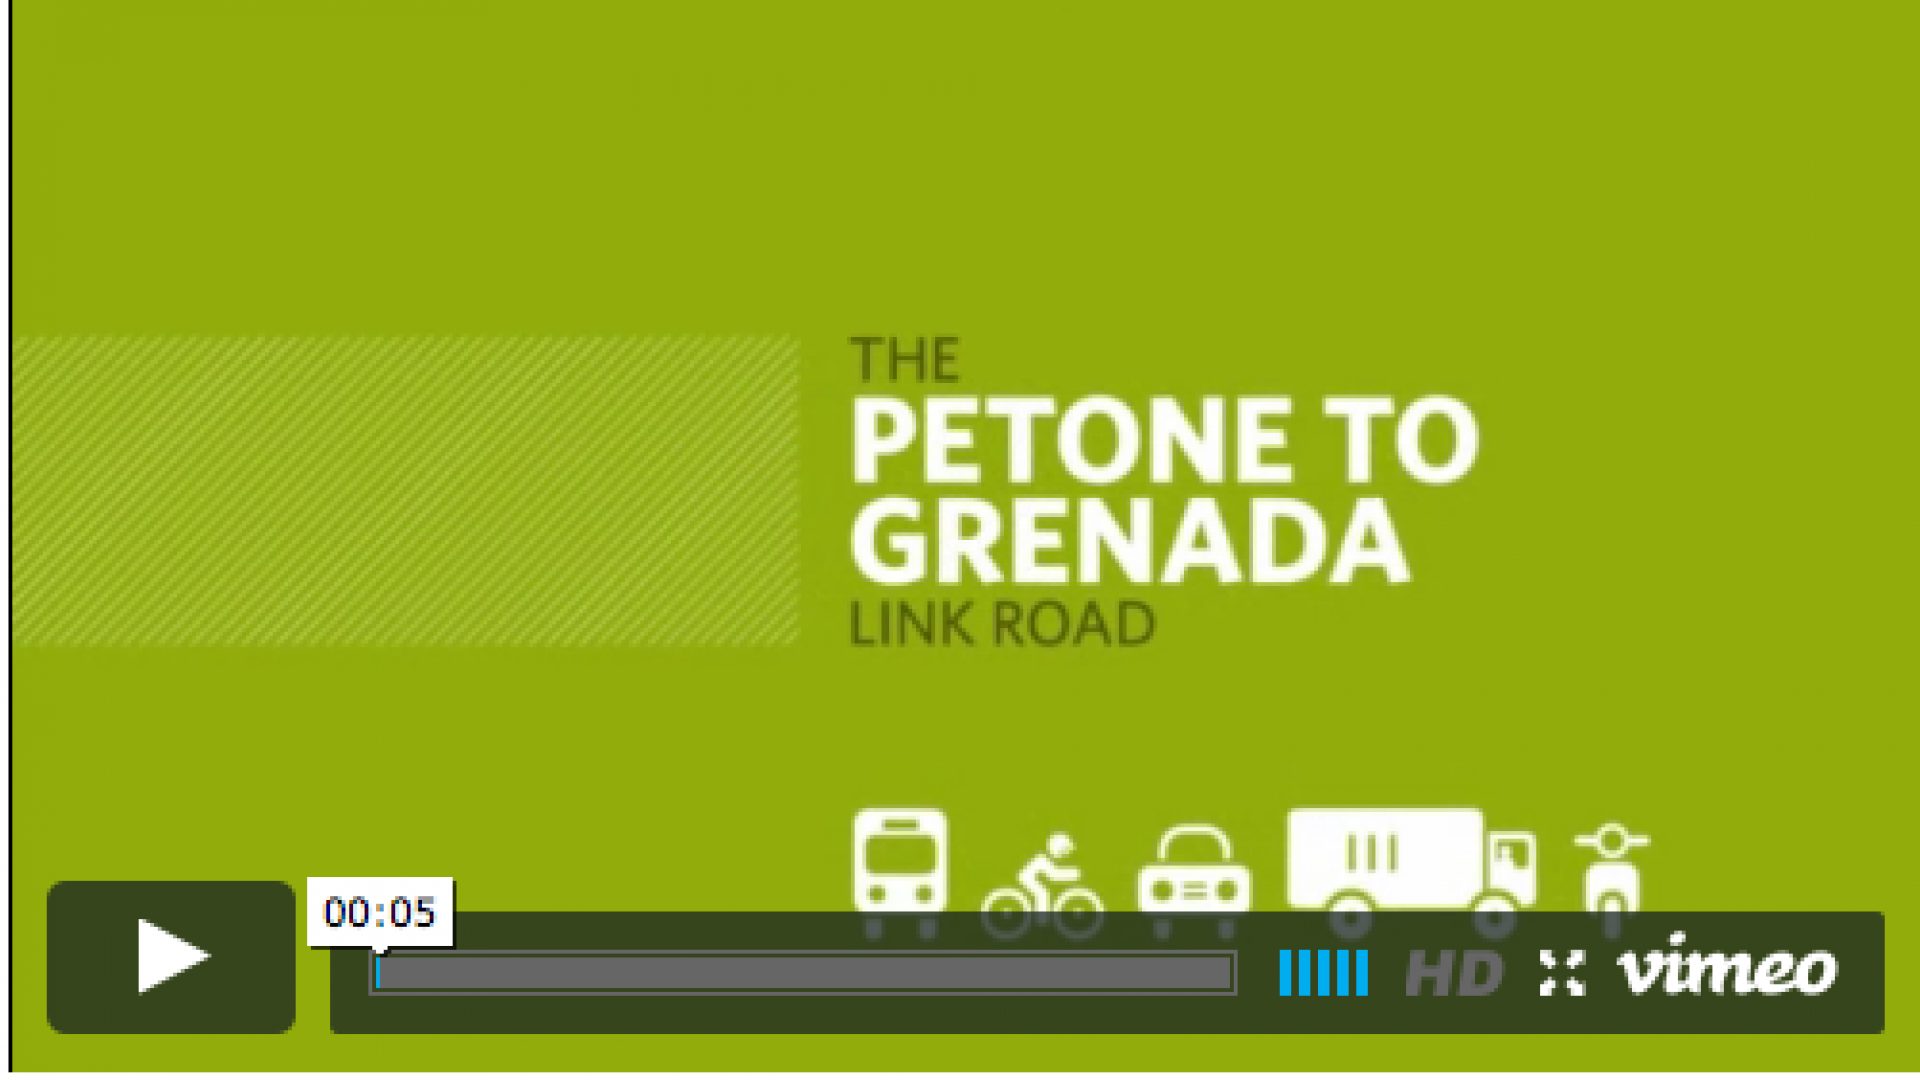 From Petone to Grenada v3